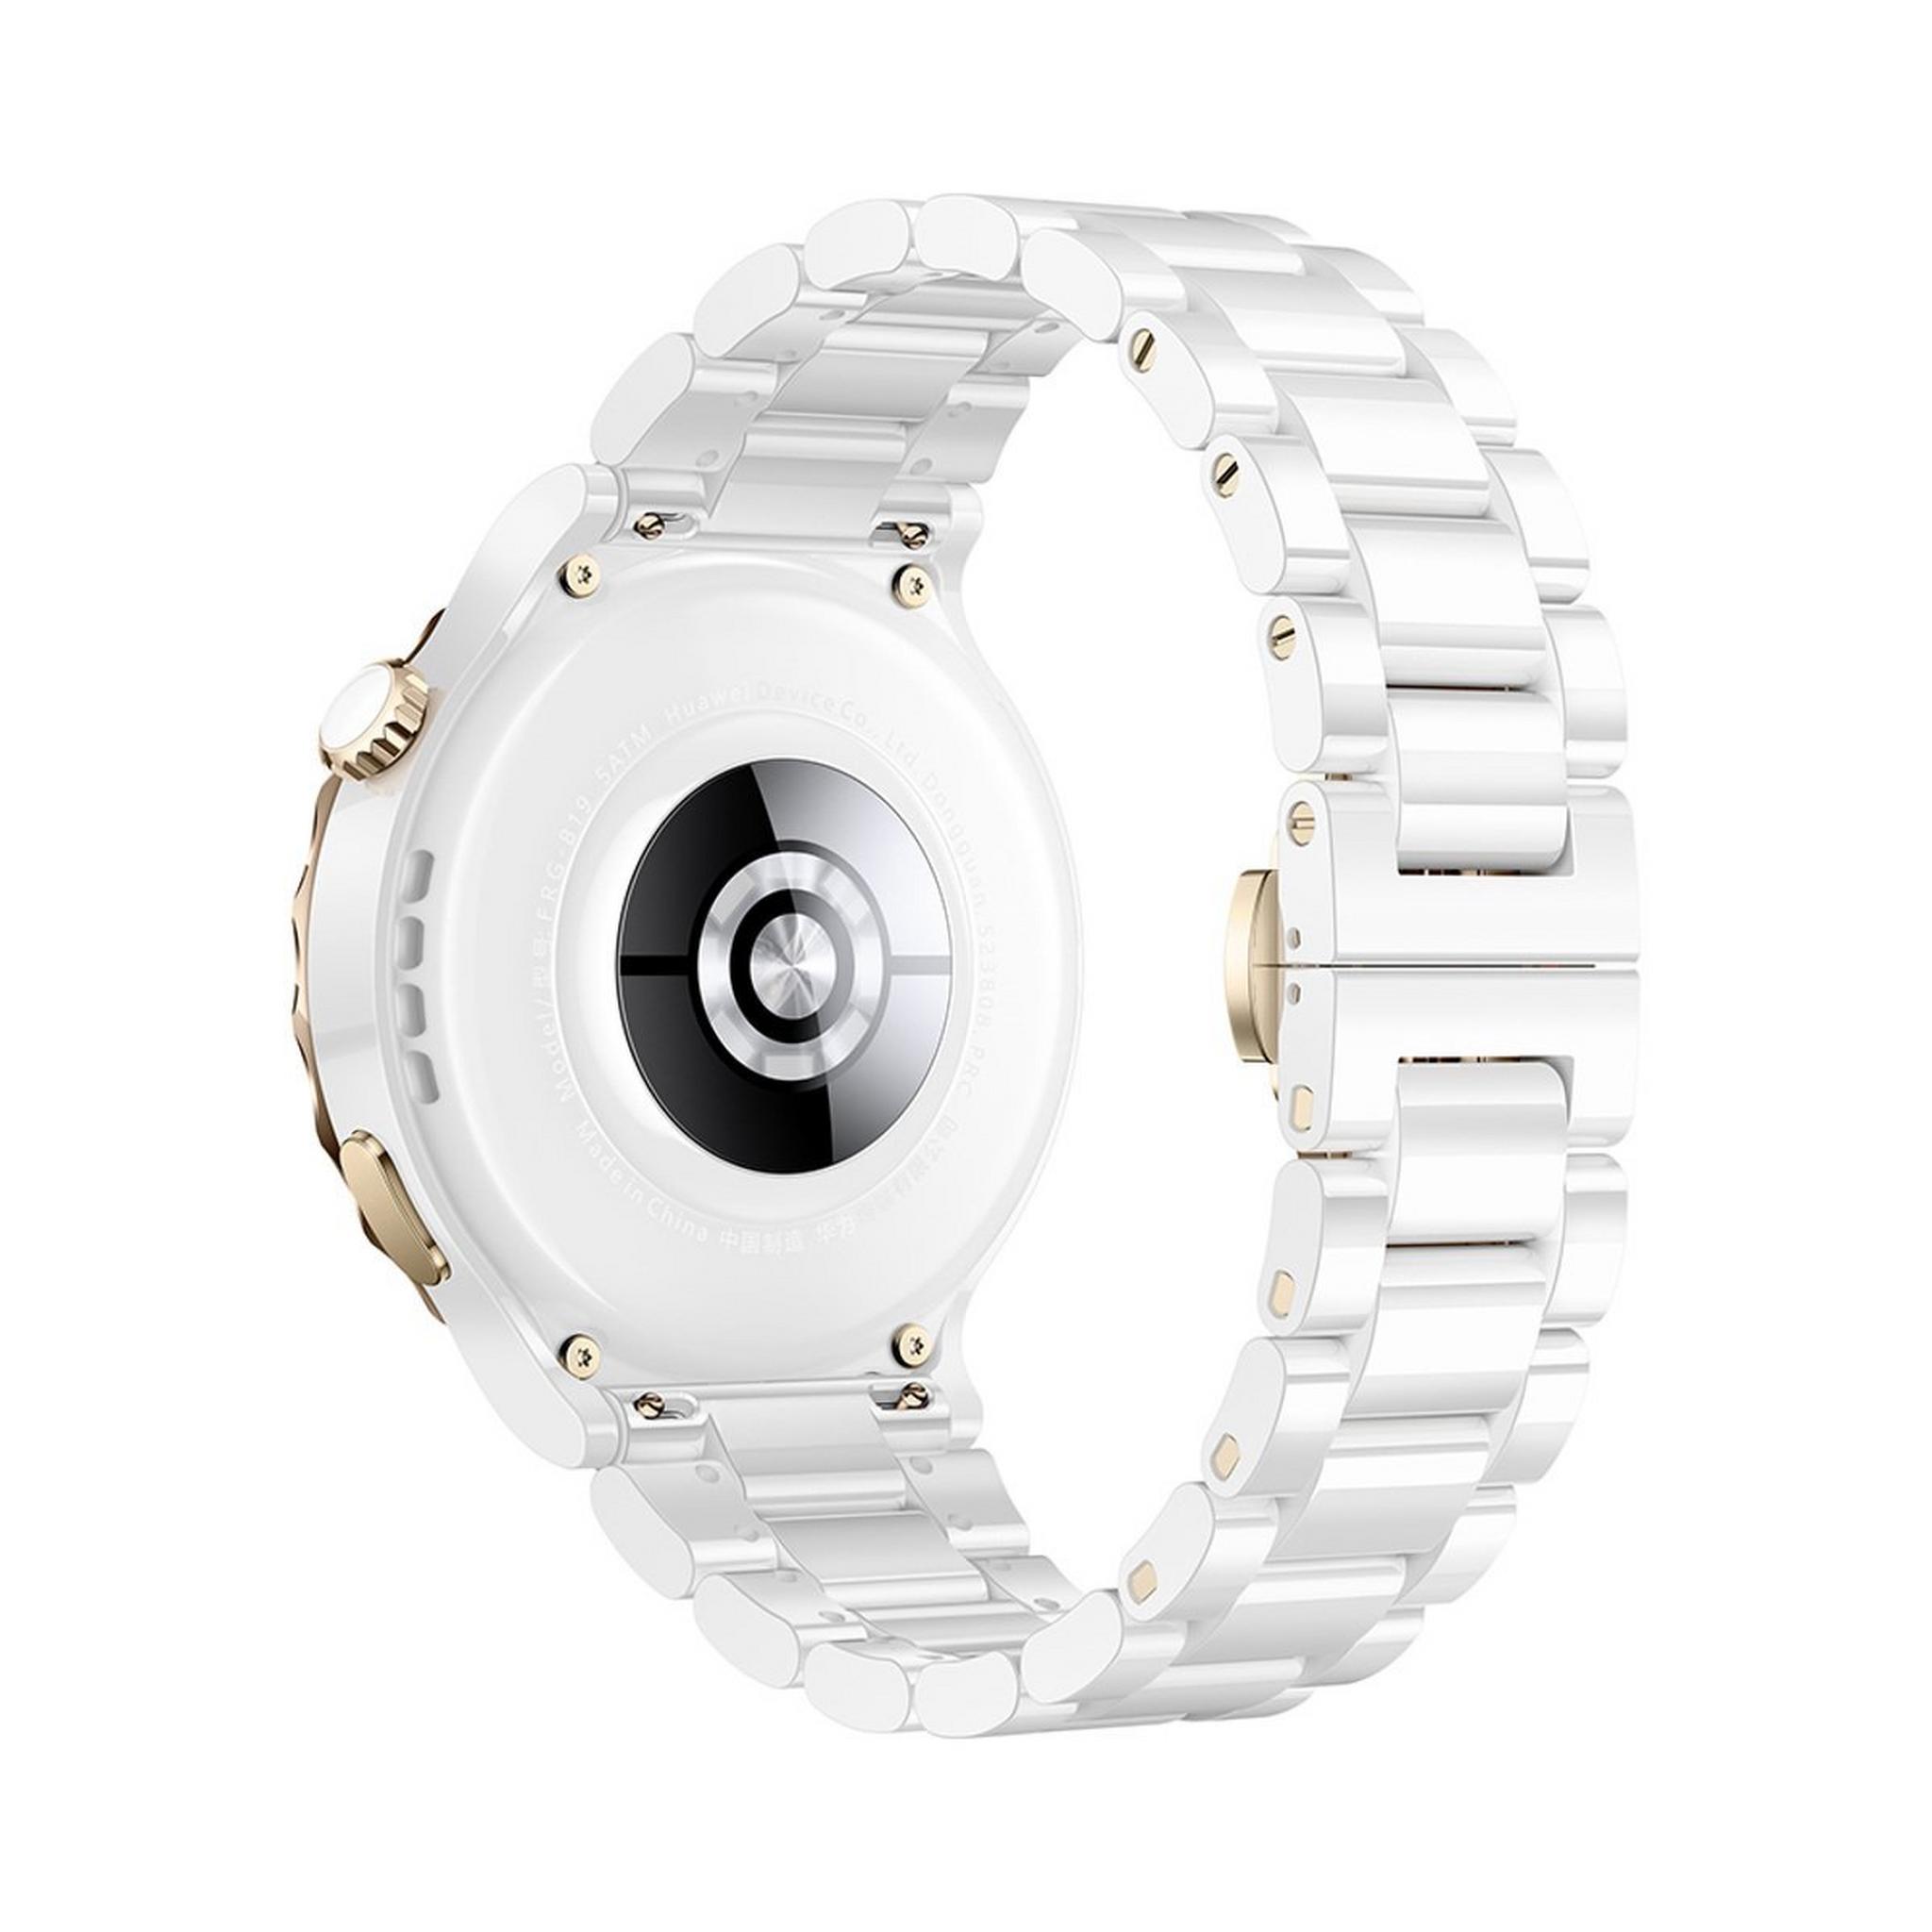 Huawei GT 3 Pro Frigga Smart Watch - 43mm